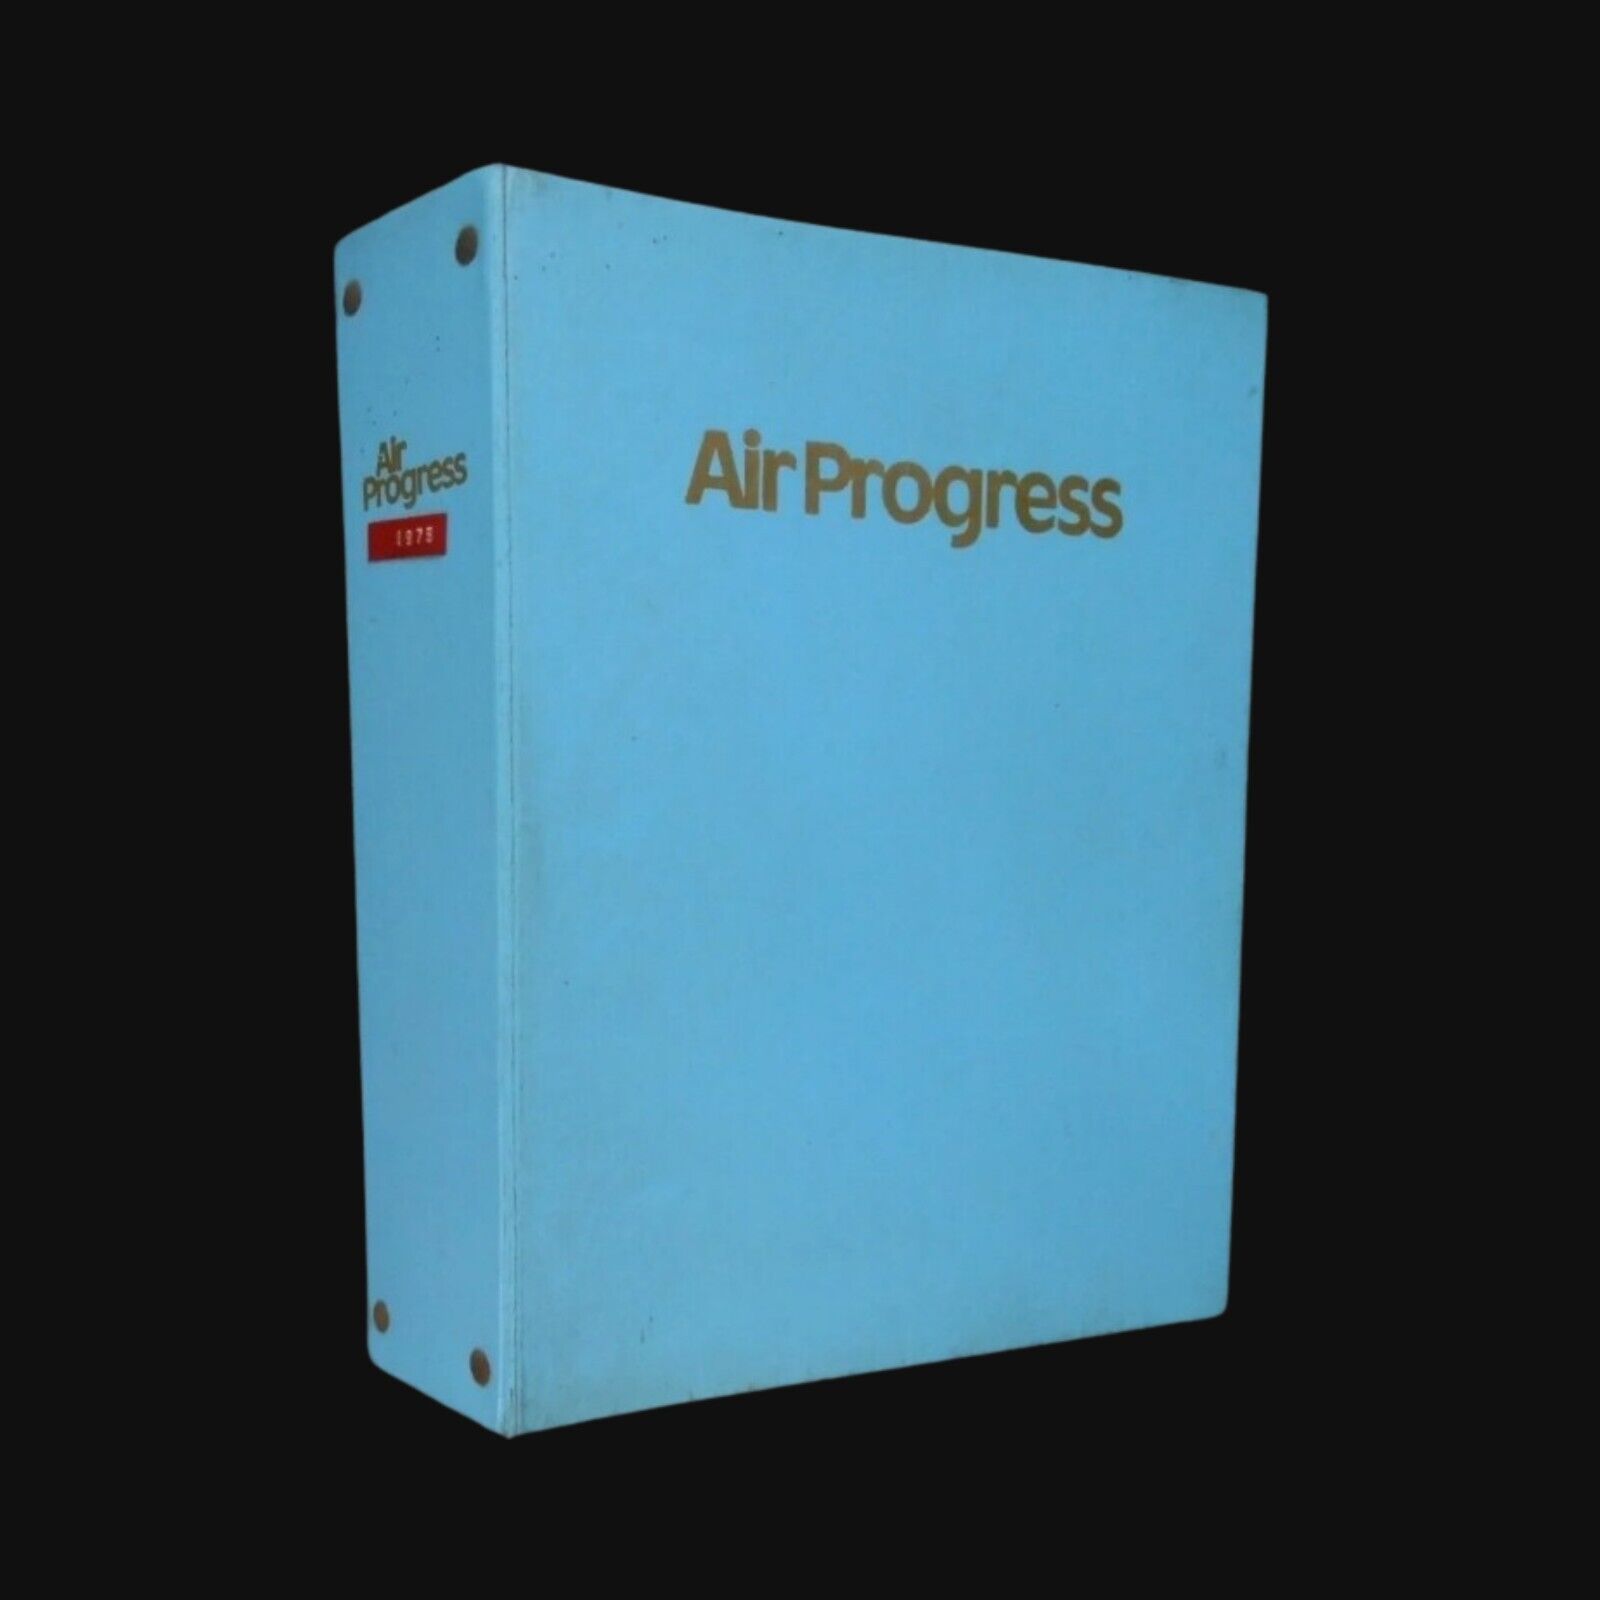 Vintage 1975 Complete Air Progress Magazine in Binder